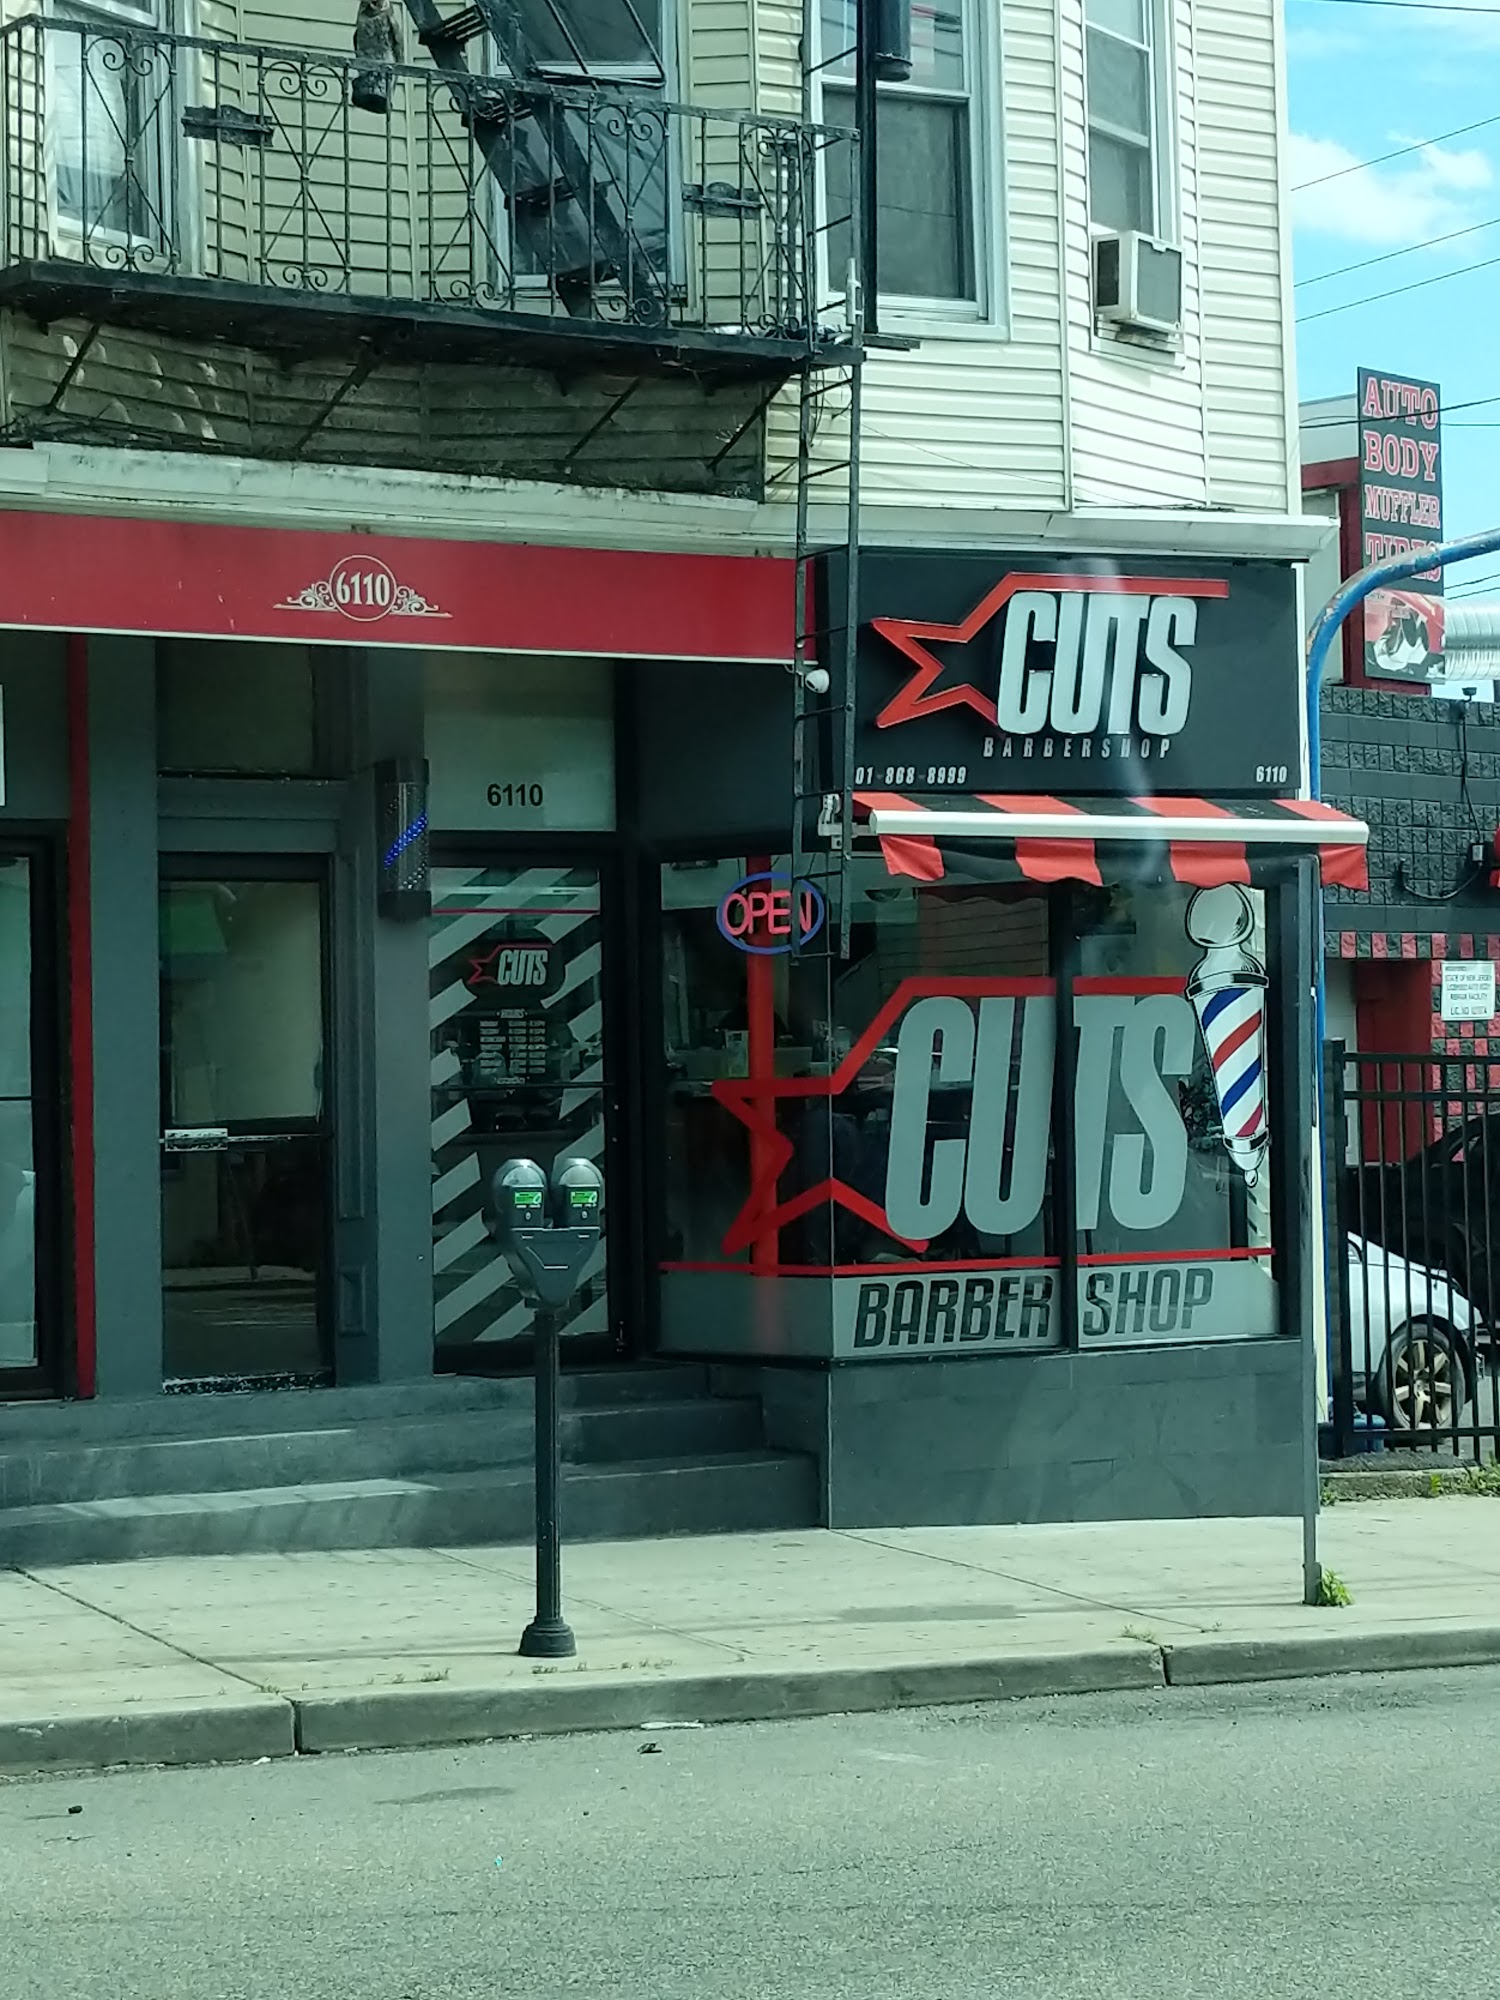 Star Cuts Barber Shop